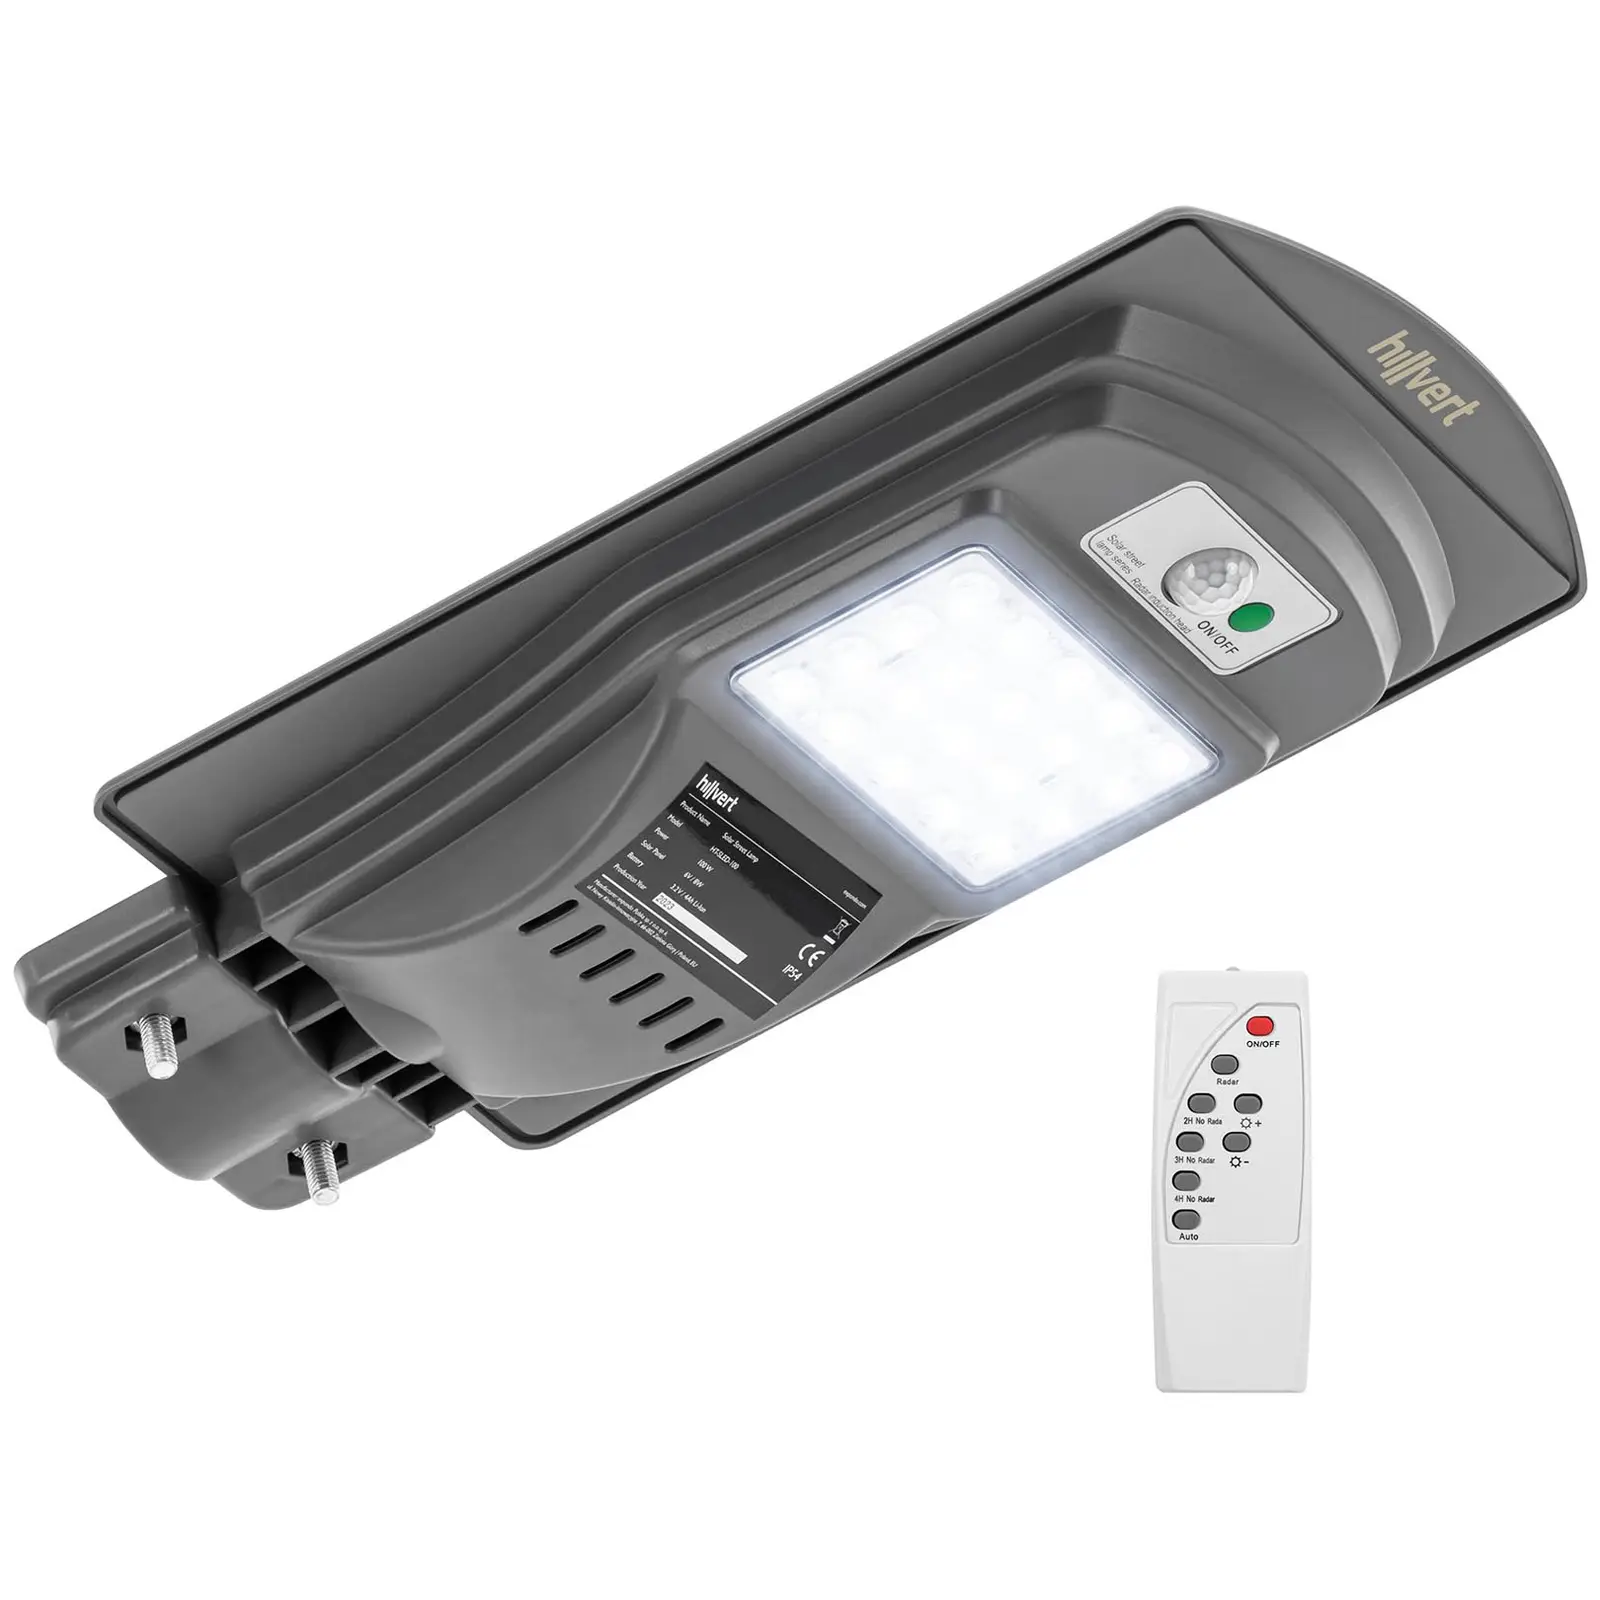 Solar outdoor light - Motion sensor - 100 W - 6000 - 6500 K - 14 - 16 h - IP 54